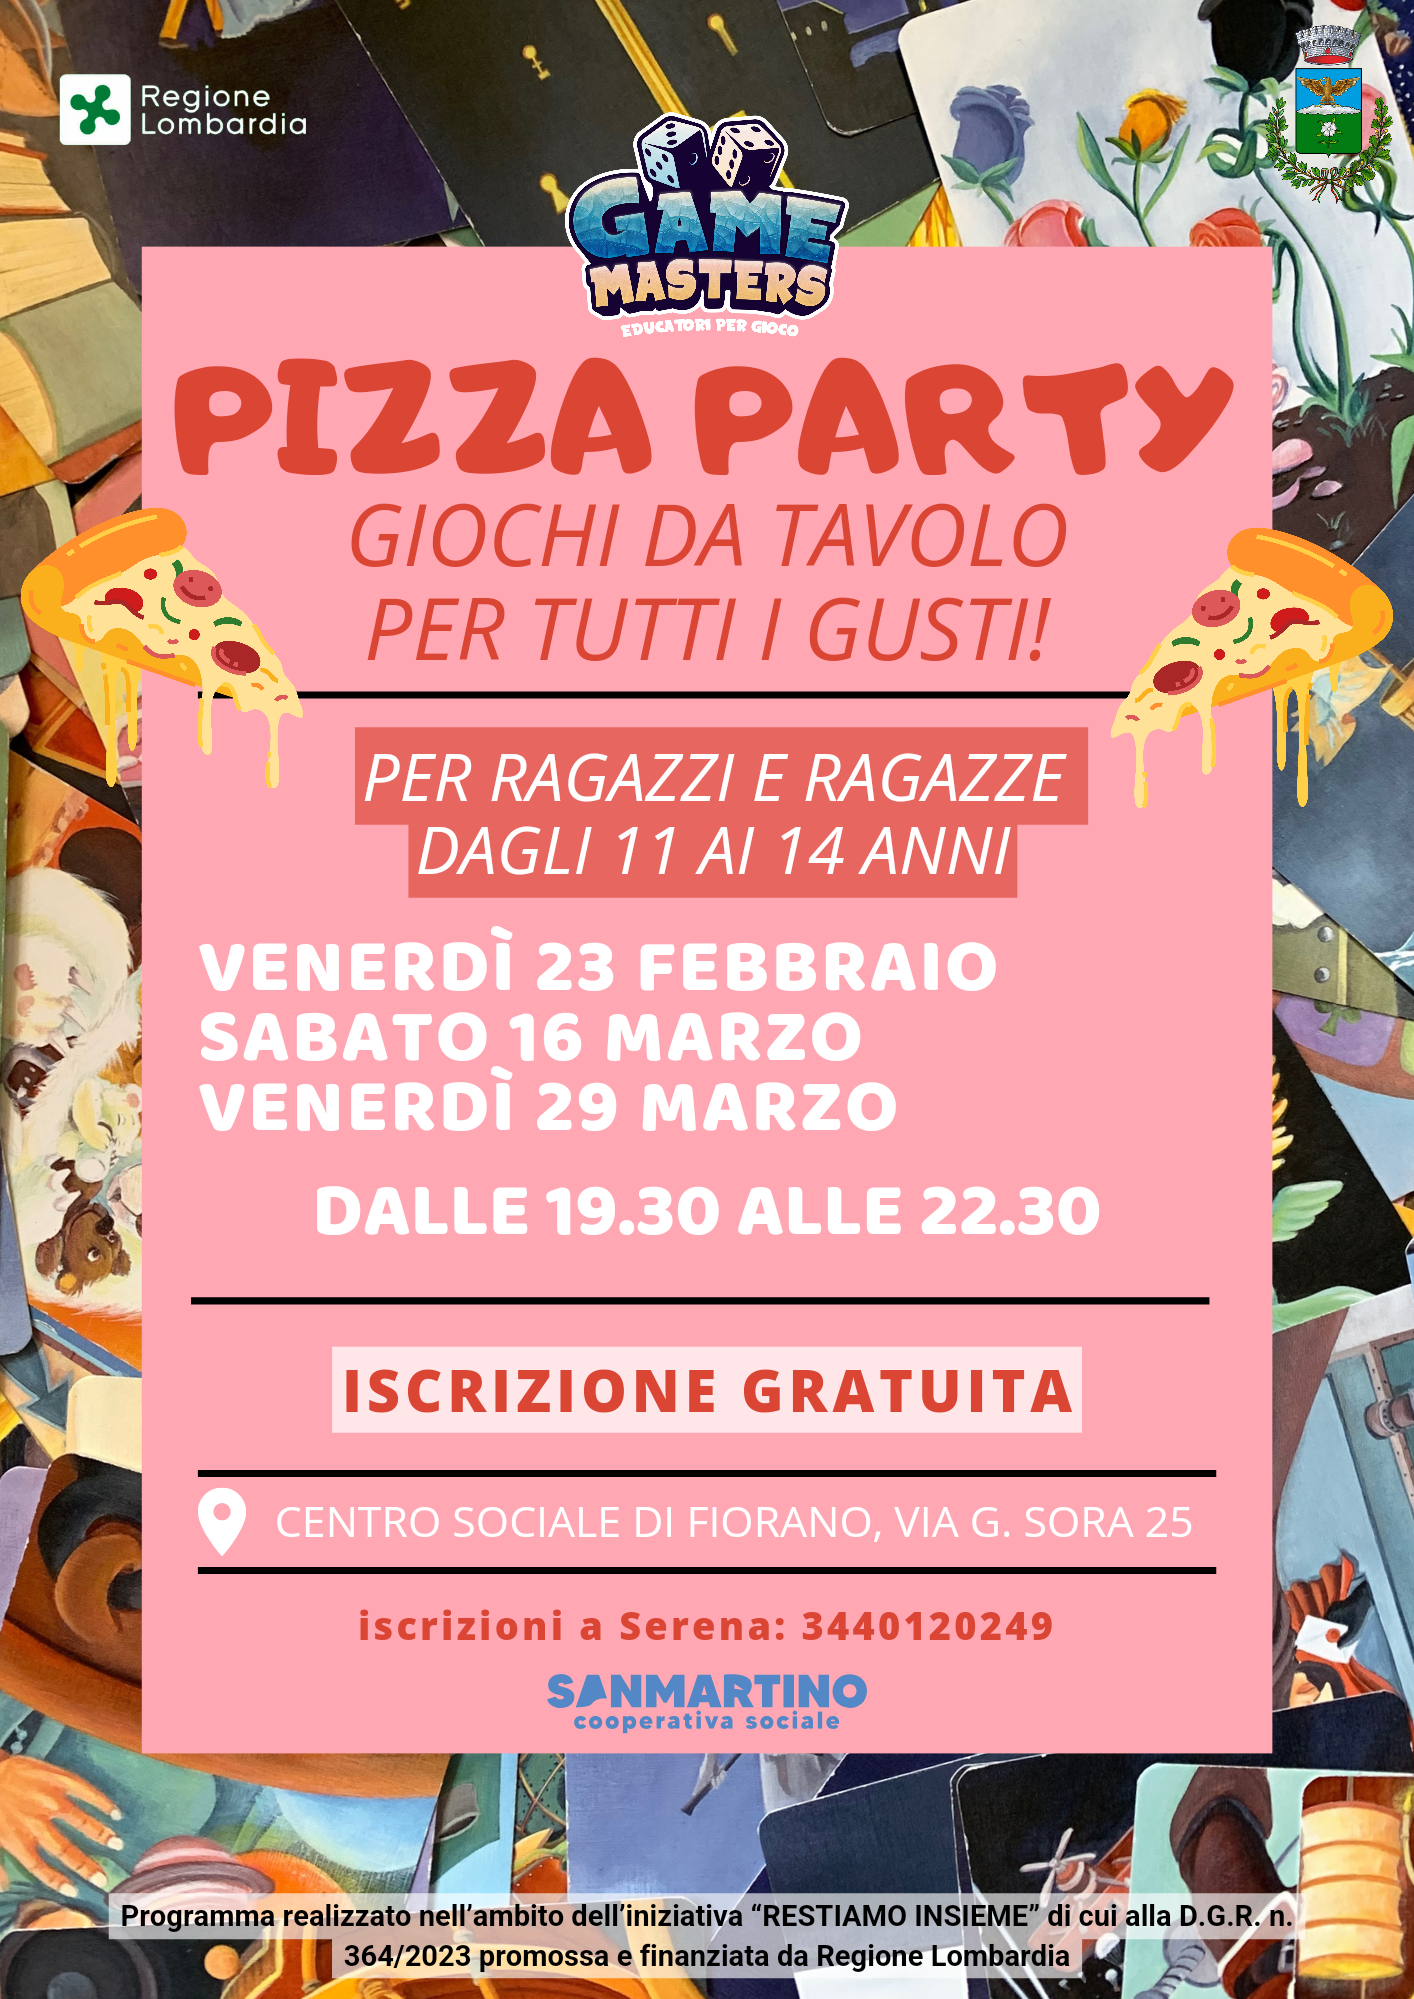 Pizza Party con giochi da tavolo per tutti i gusti per ragazze e ragazzi dagli 11 ai 14 anni.
SABATO 16 e VENERDI' 29 MARZO.
Evento Gratuito!